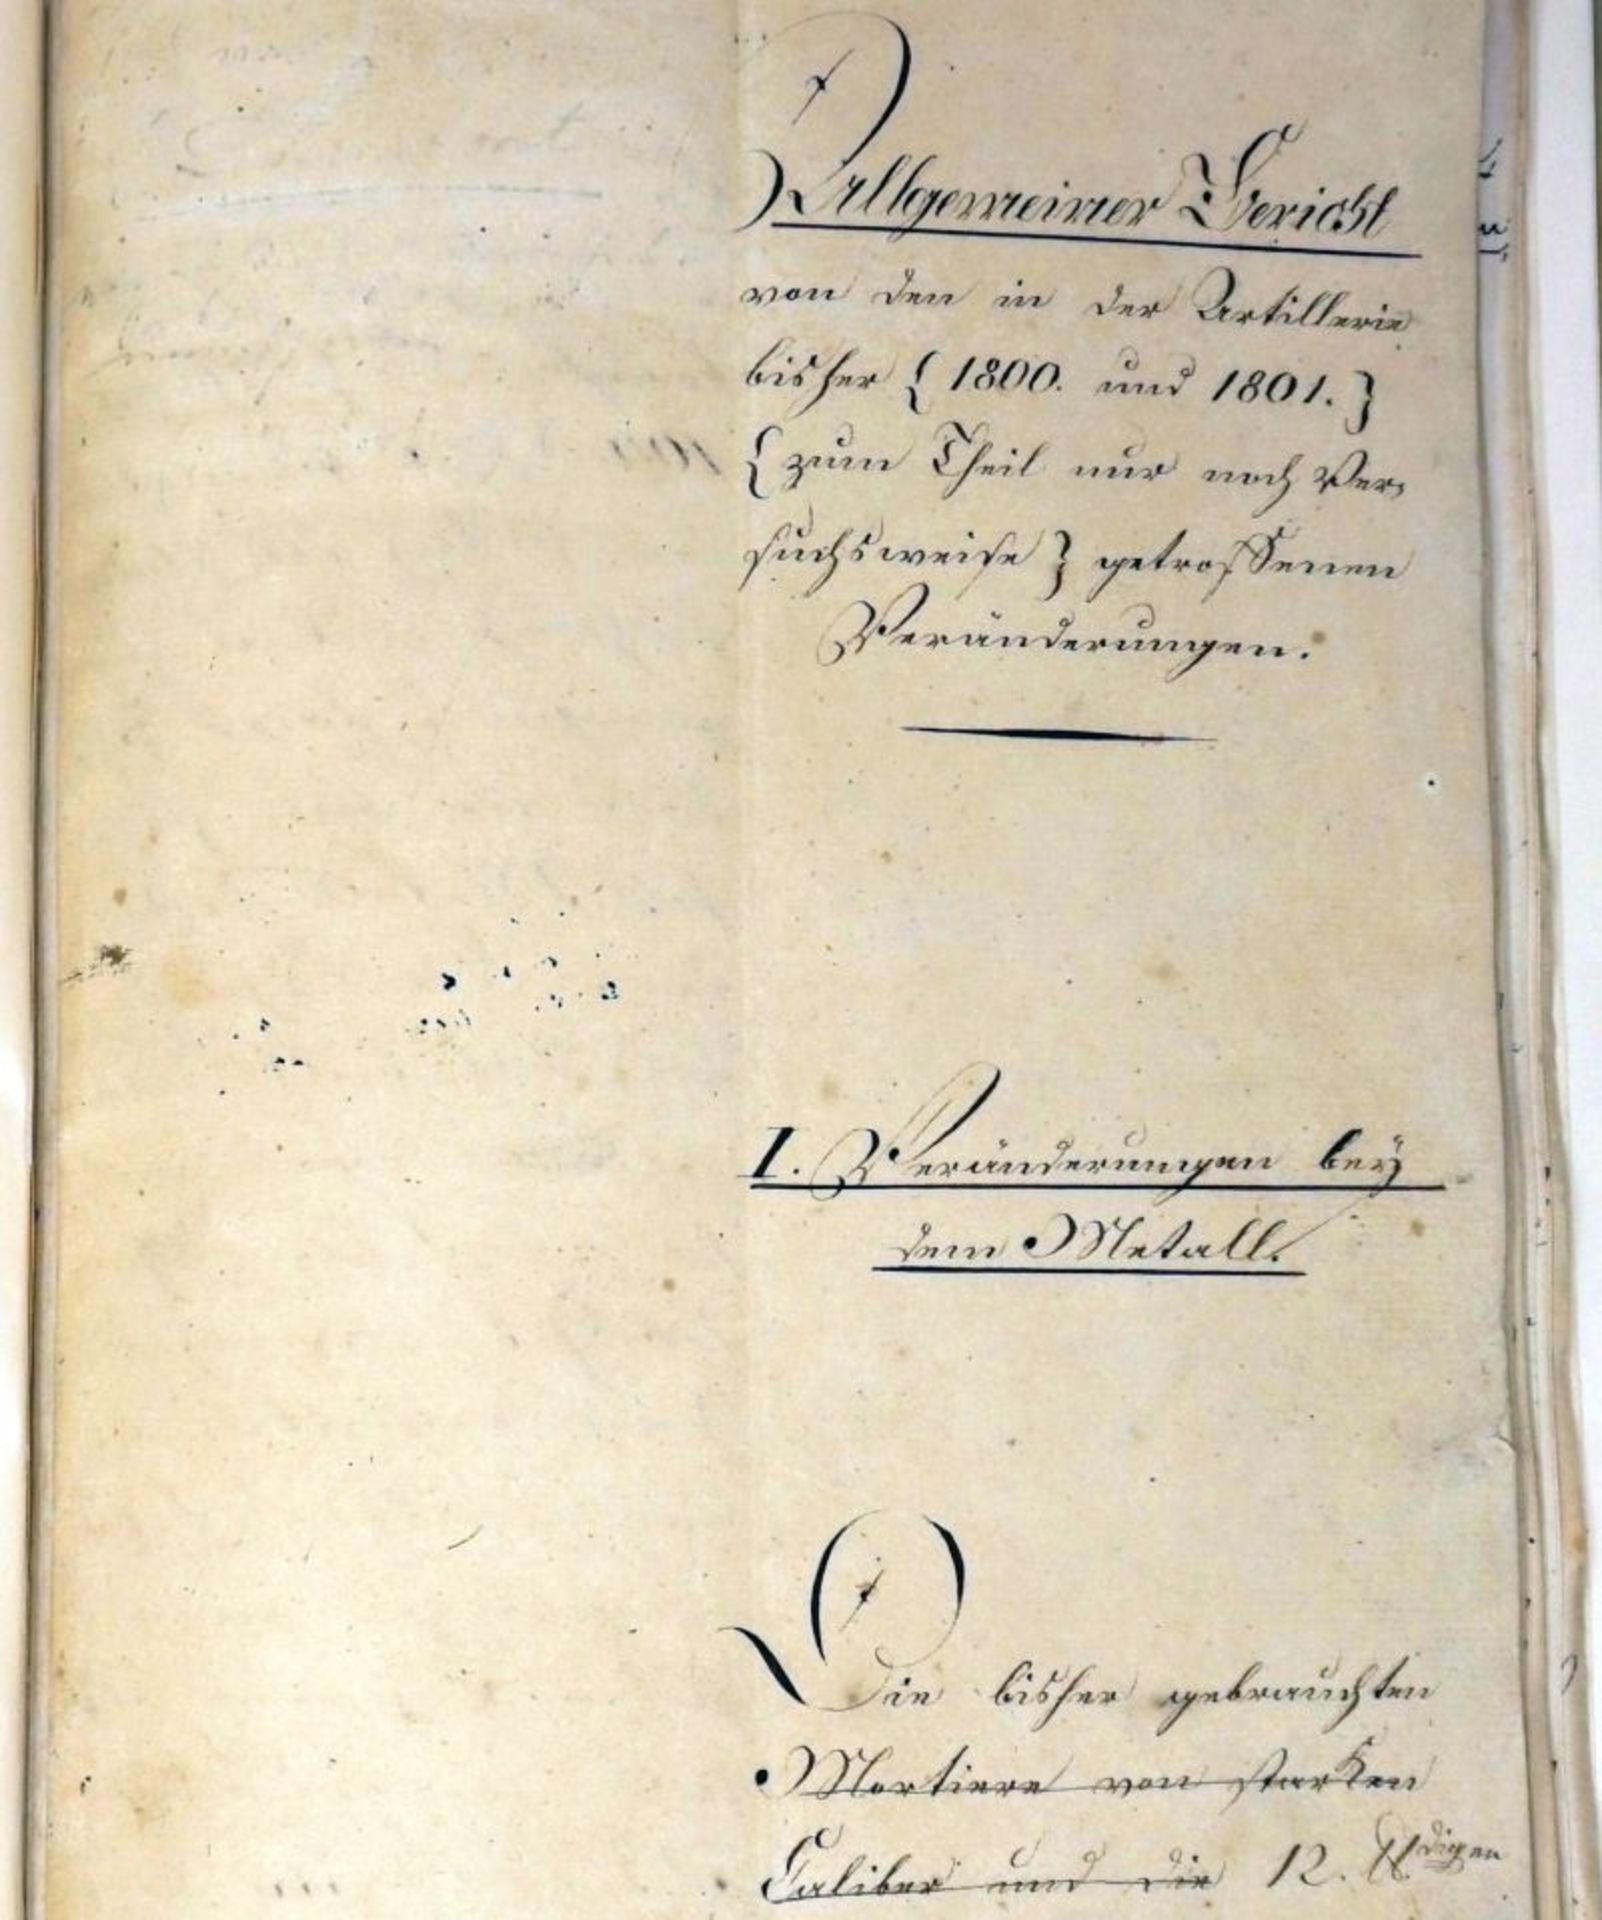 Scharnhorst, Gerhard von: Signiertes Manuskript